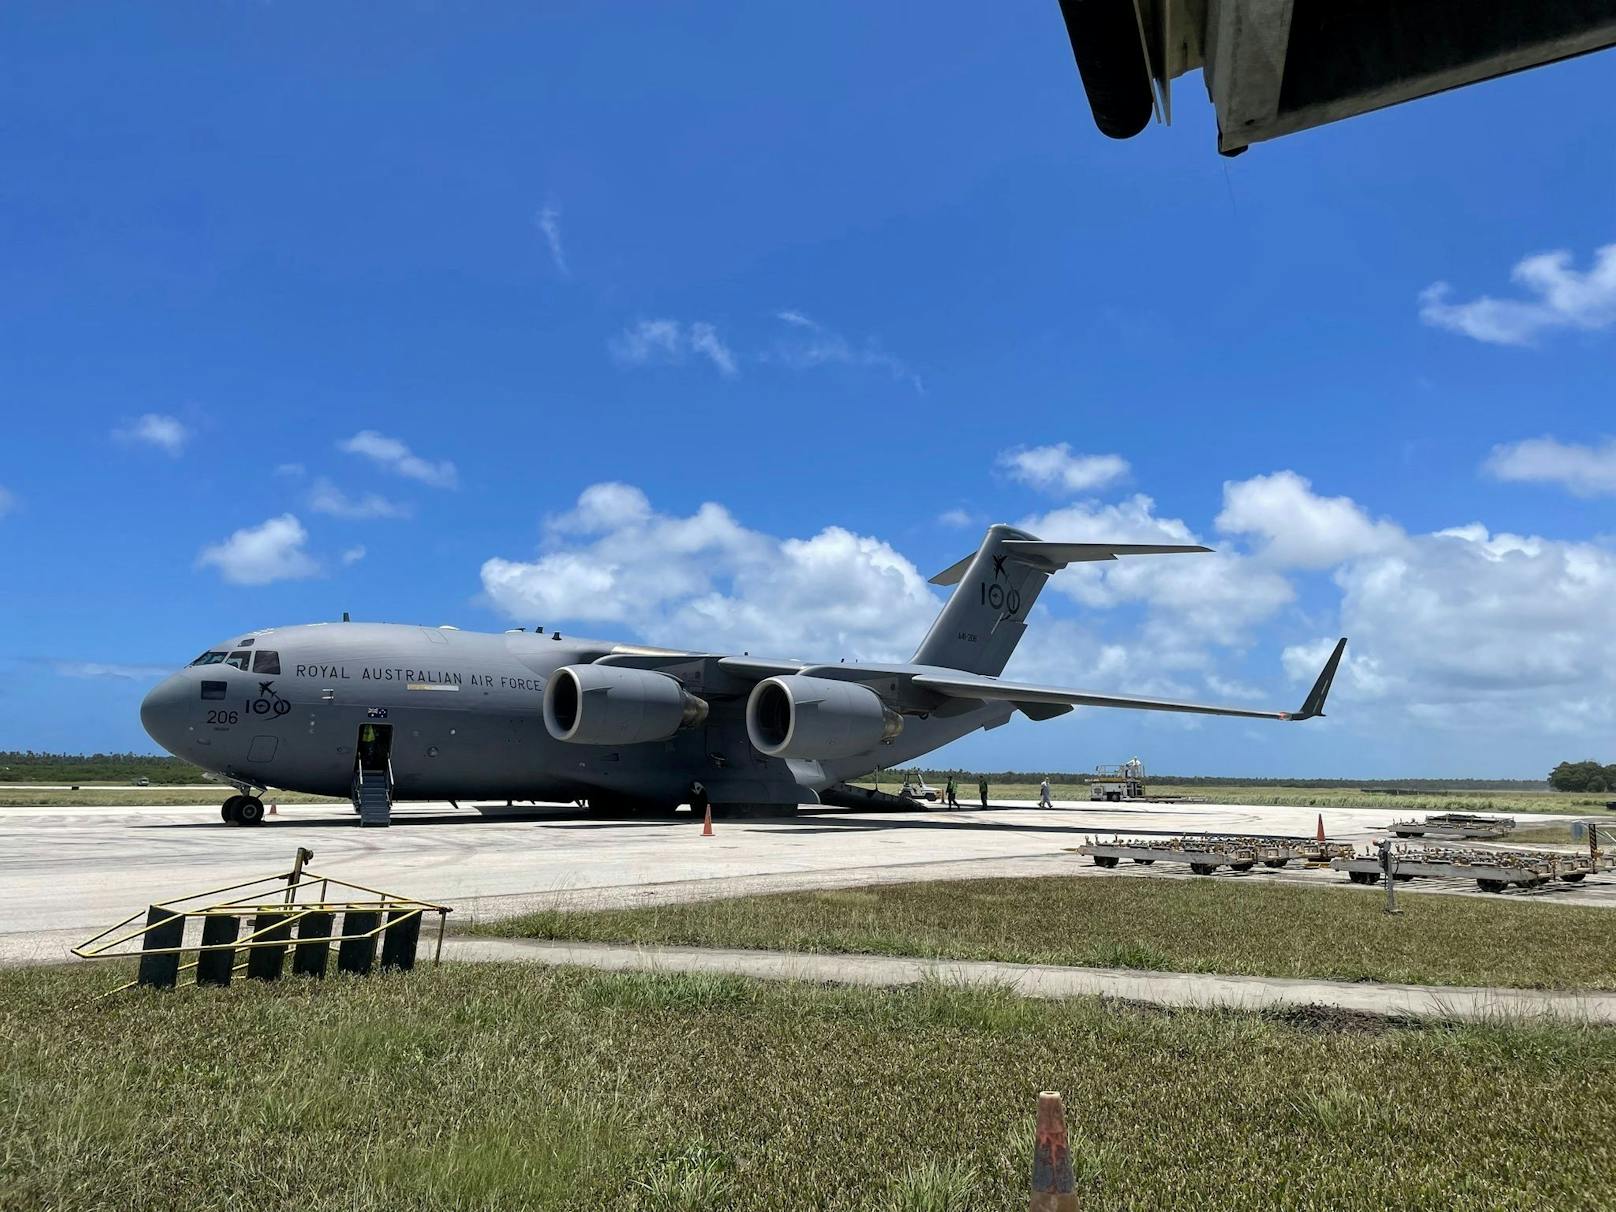 Am Donnerstag sind die ersten Hilfsgüter aus Australien auf Tonga eingetroffen. Die Landebahn des Flughafens musste erst von der dicken Ascheschicht befreit werden.